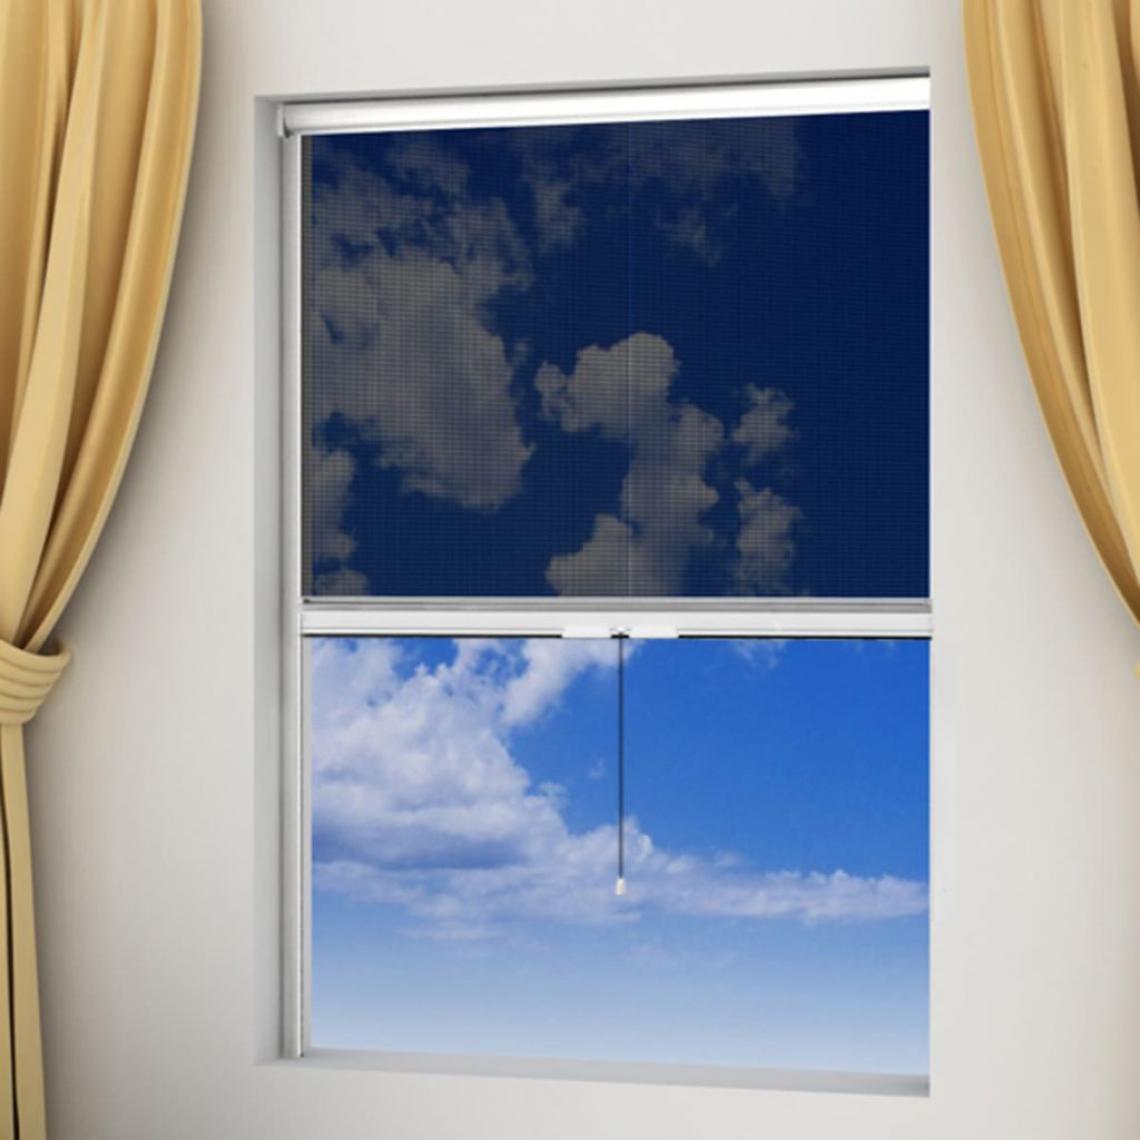 Hucoco - Moustiquaire enroulable blanche pour fenêtre 140 x 170 cm - Blanc - Moustiquaire Fenêtre